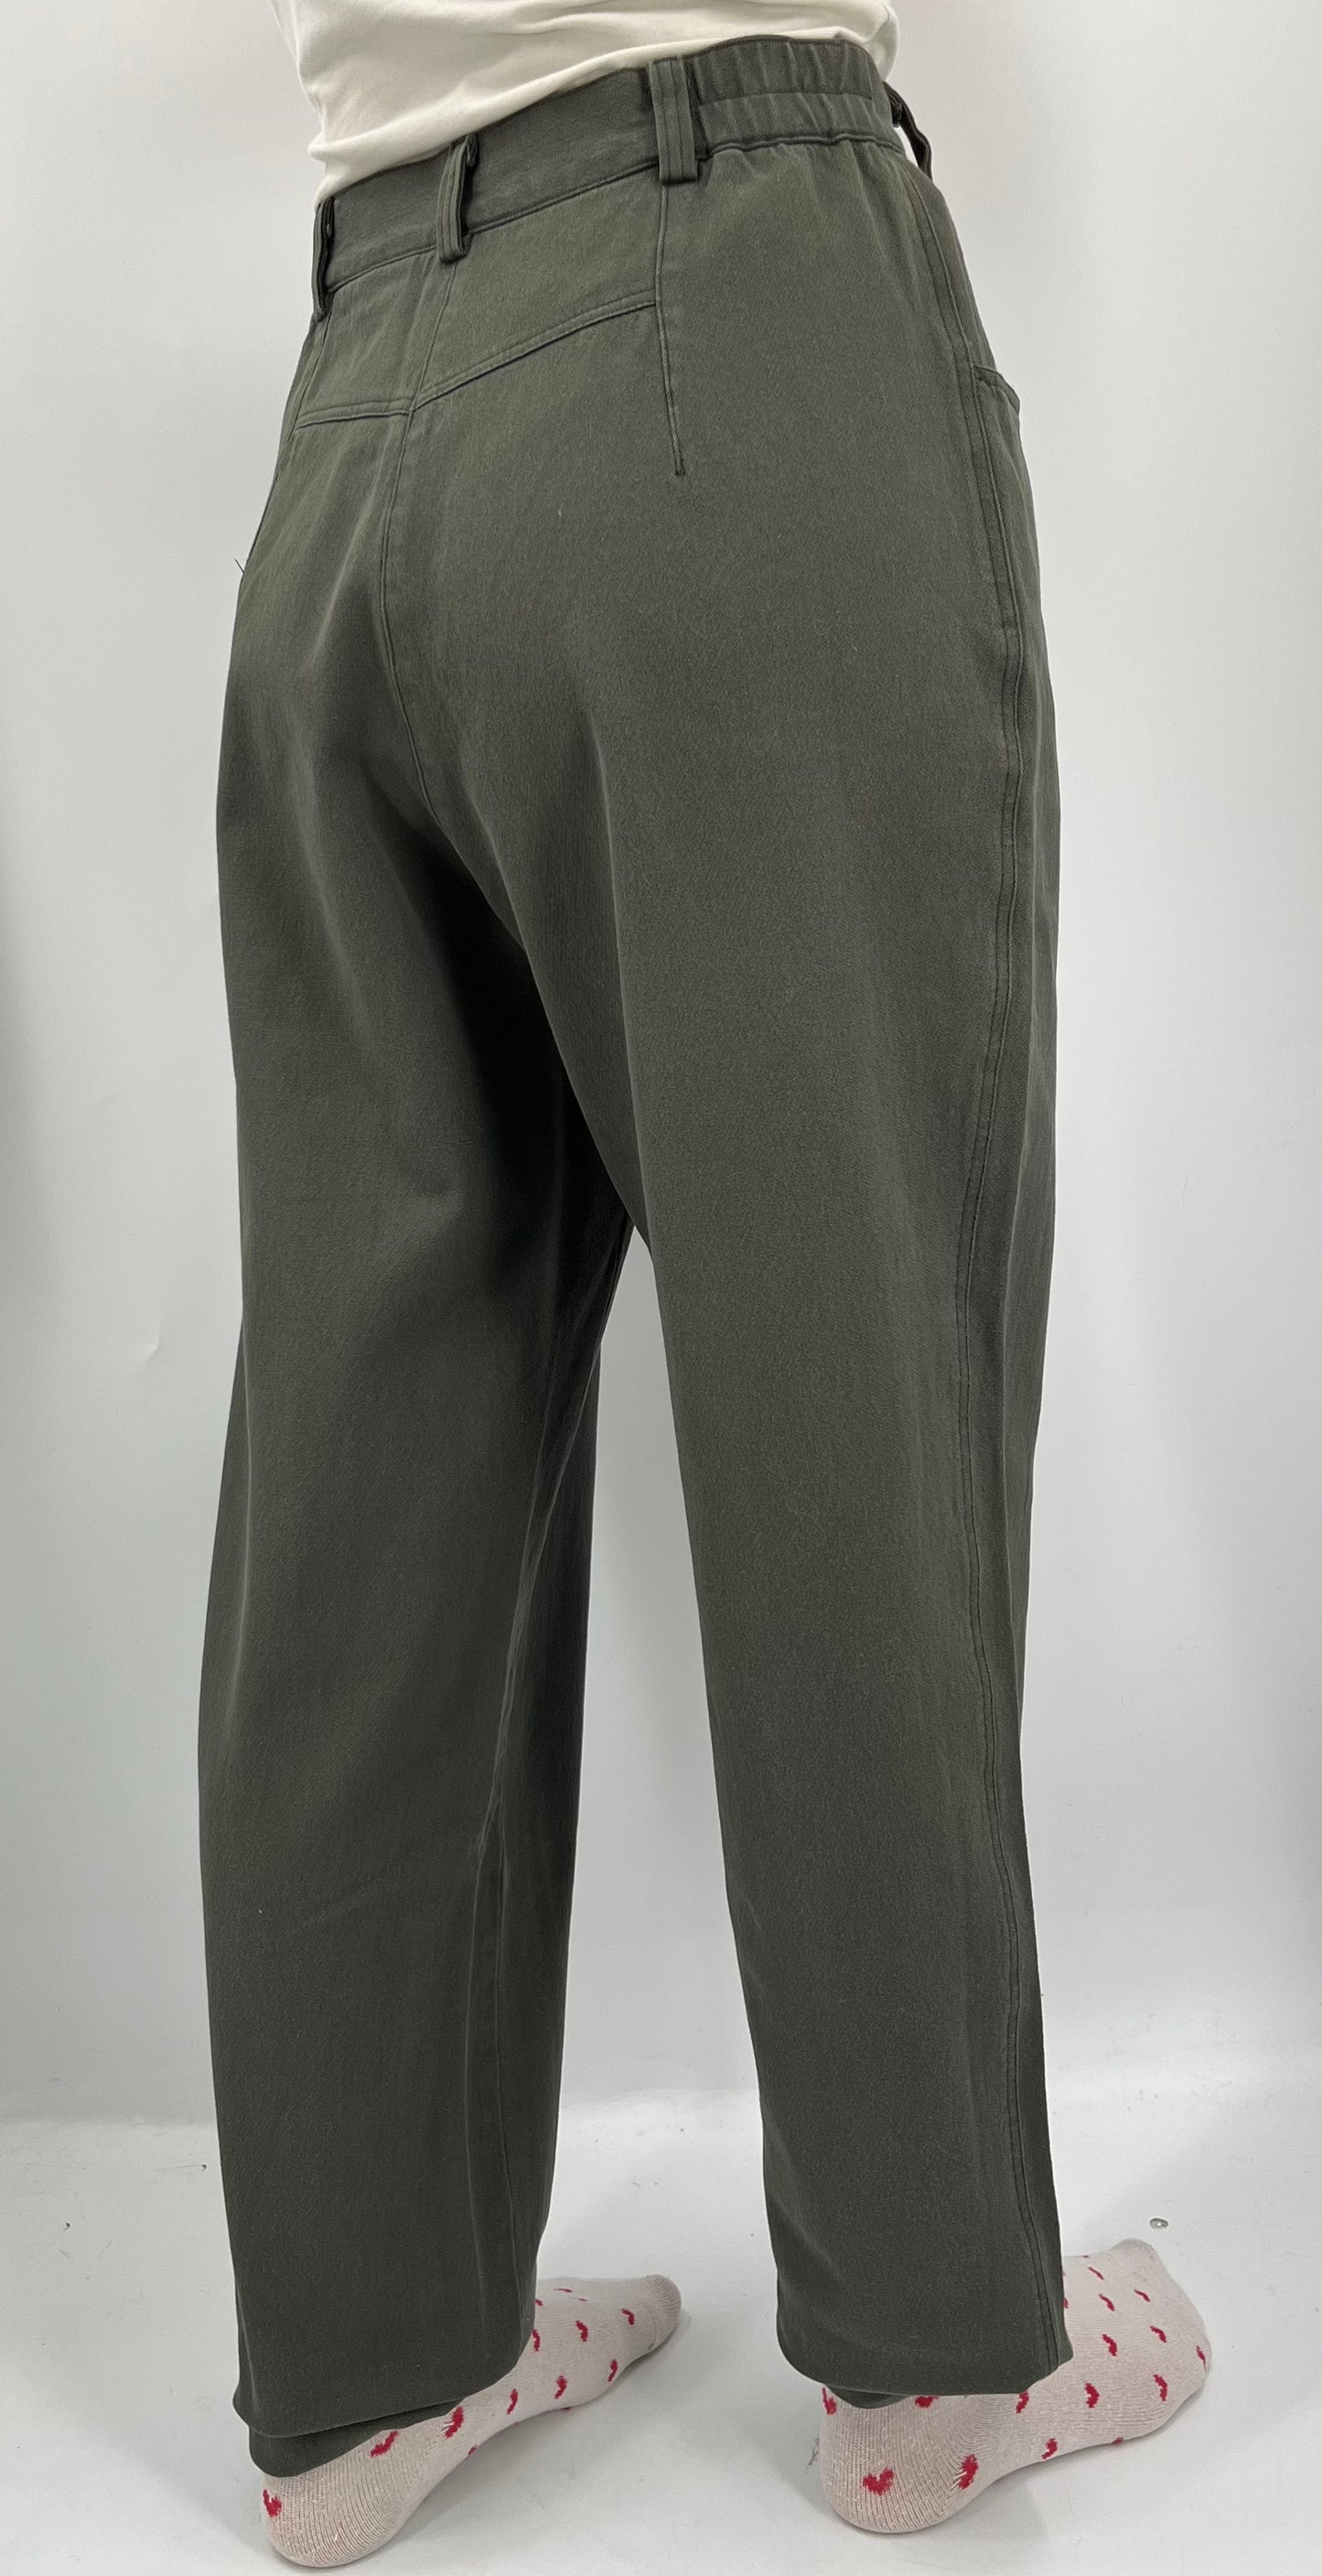 Voglia, harmaavihreät housut, 2000-luku, vyöt.ymp. 70cm, kokoarvio 36-38